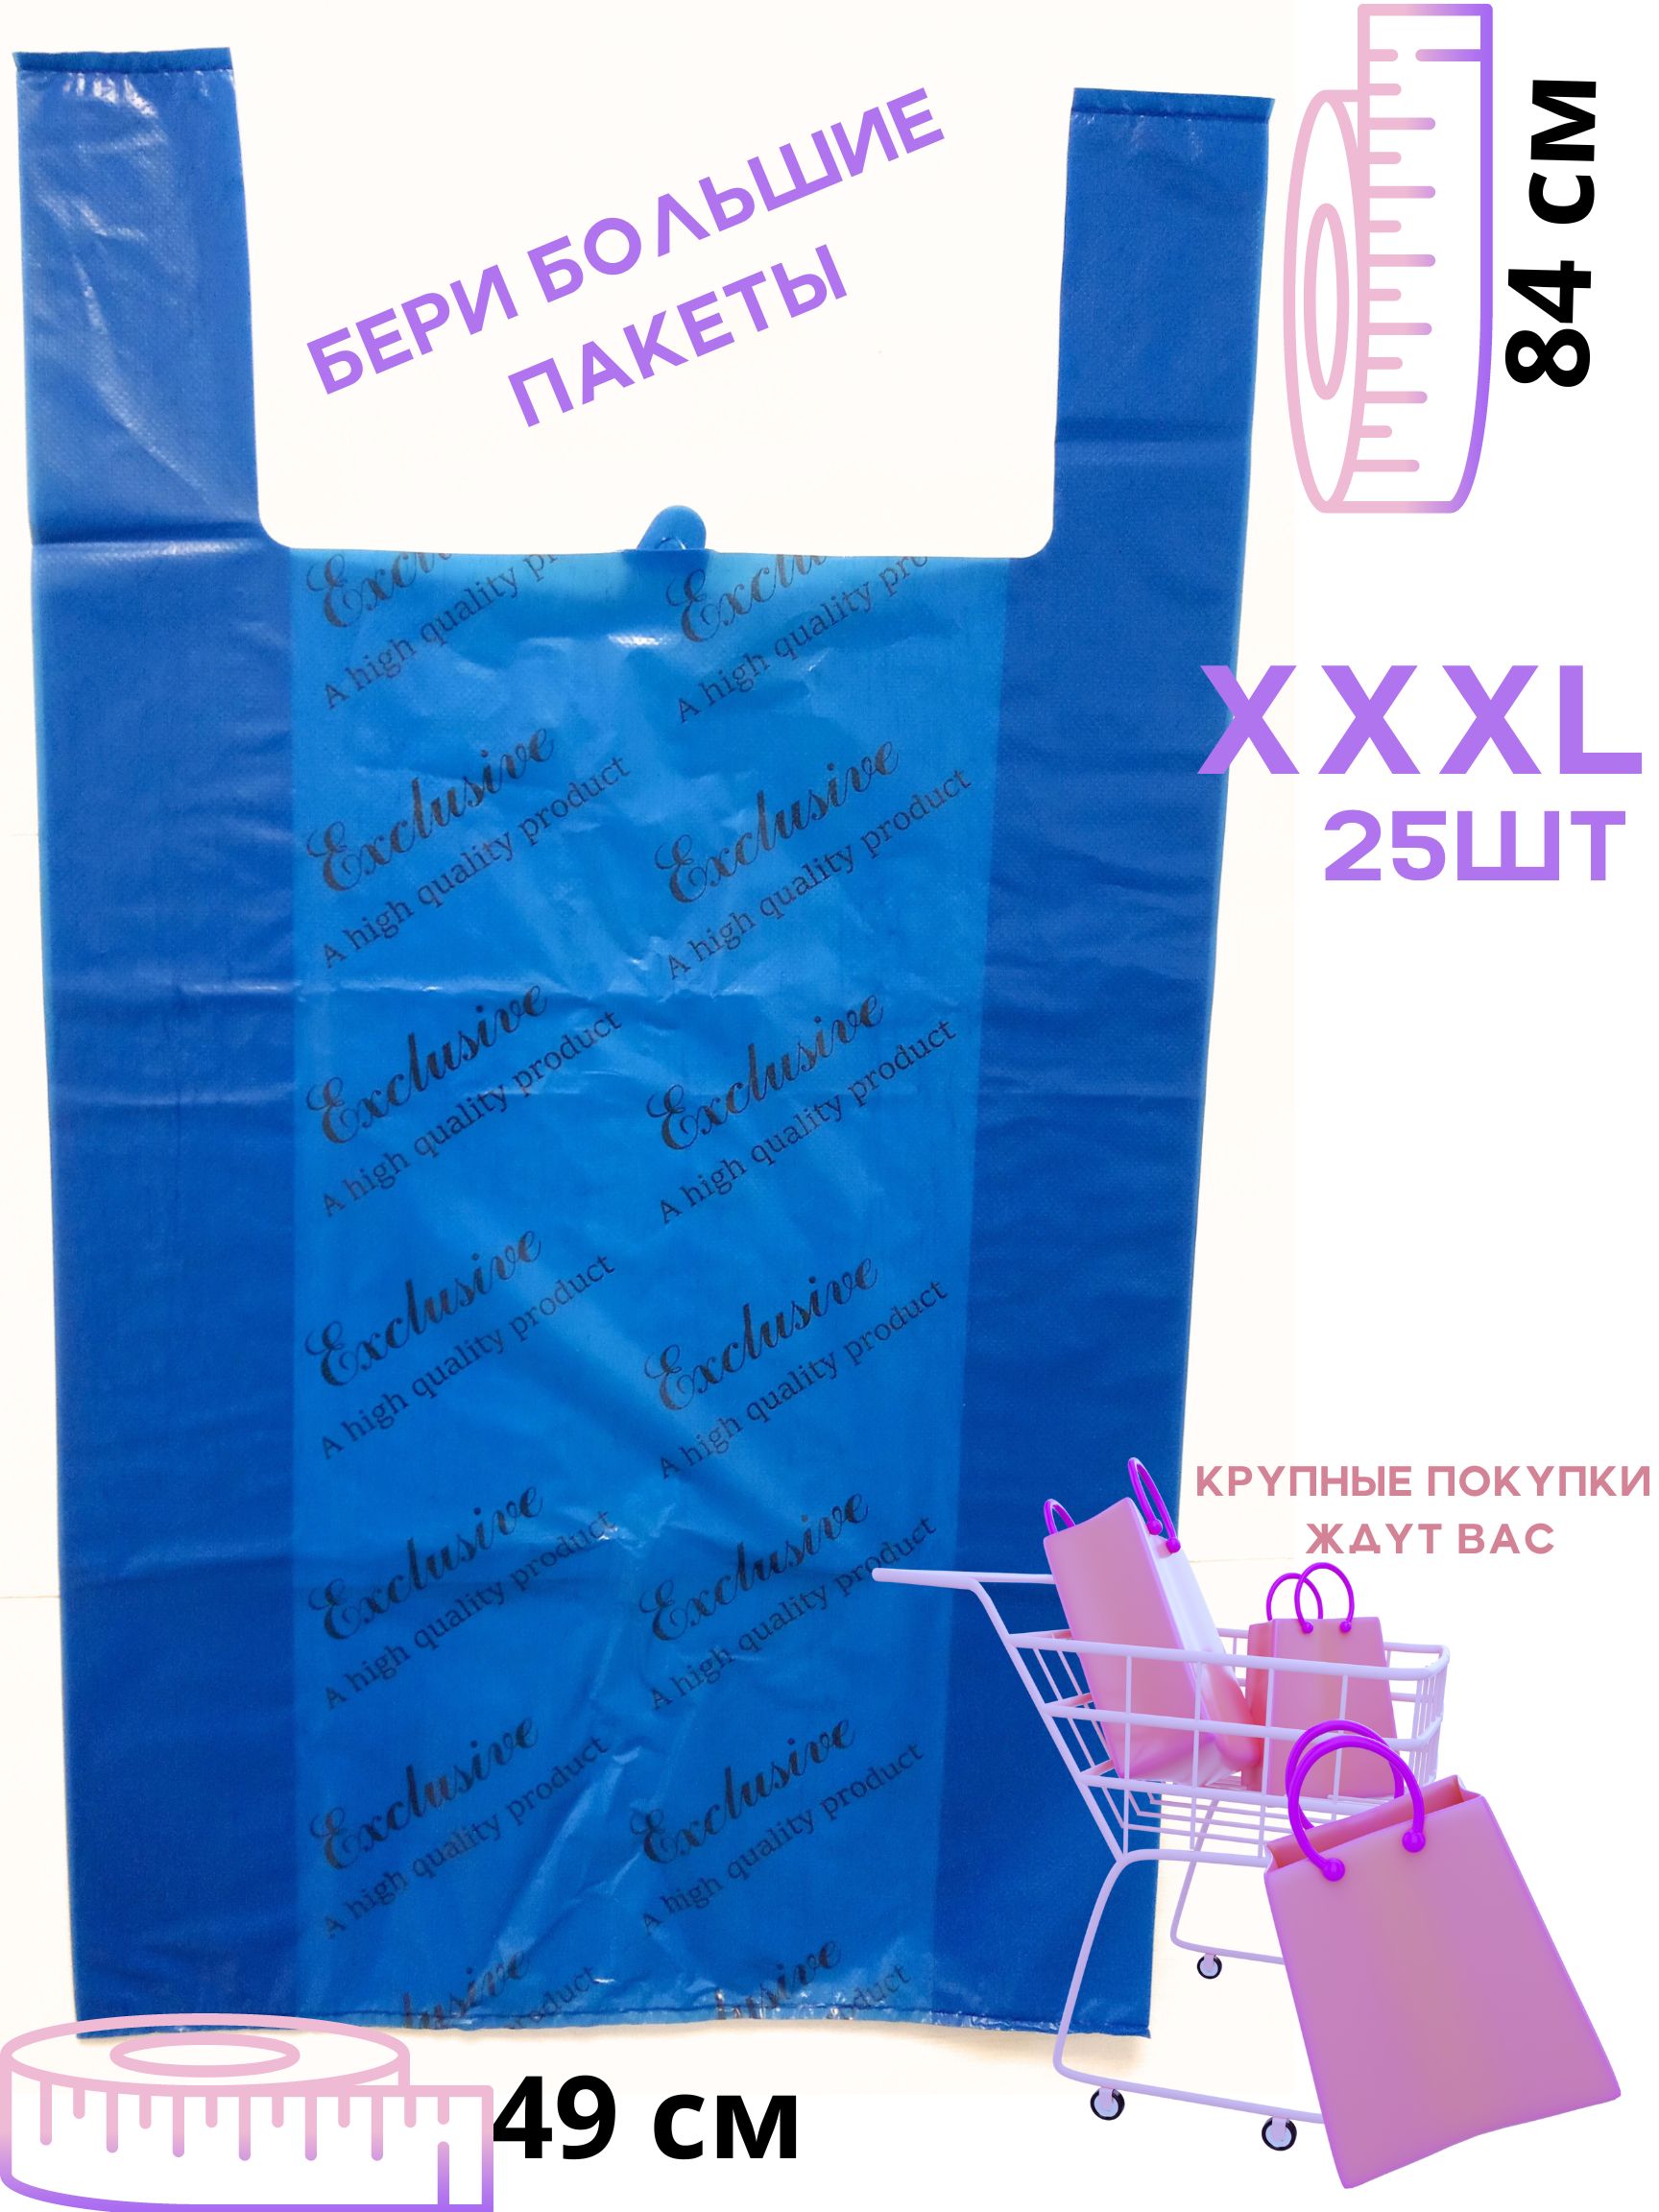 Пакет майка БытСервис Exciusive фасовочный, полиэтилен, синий 25 шт, XXXL, 49*84 см